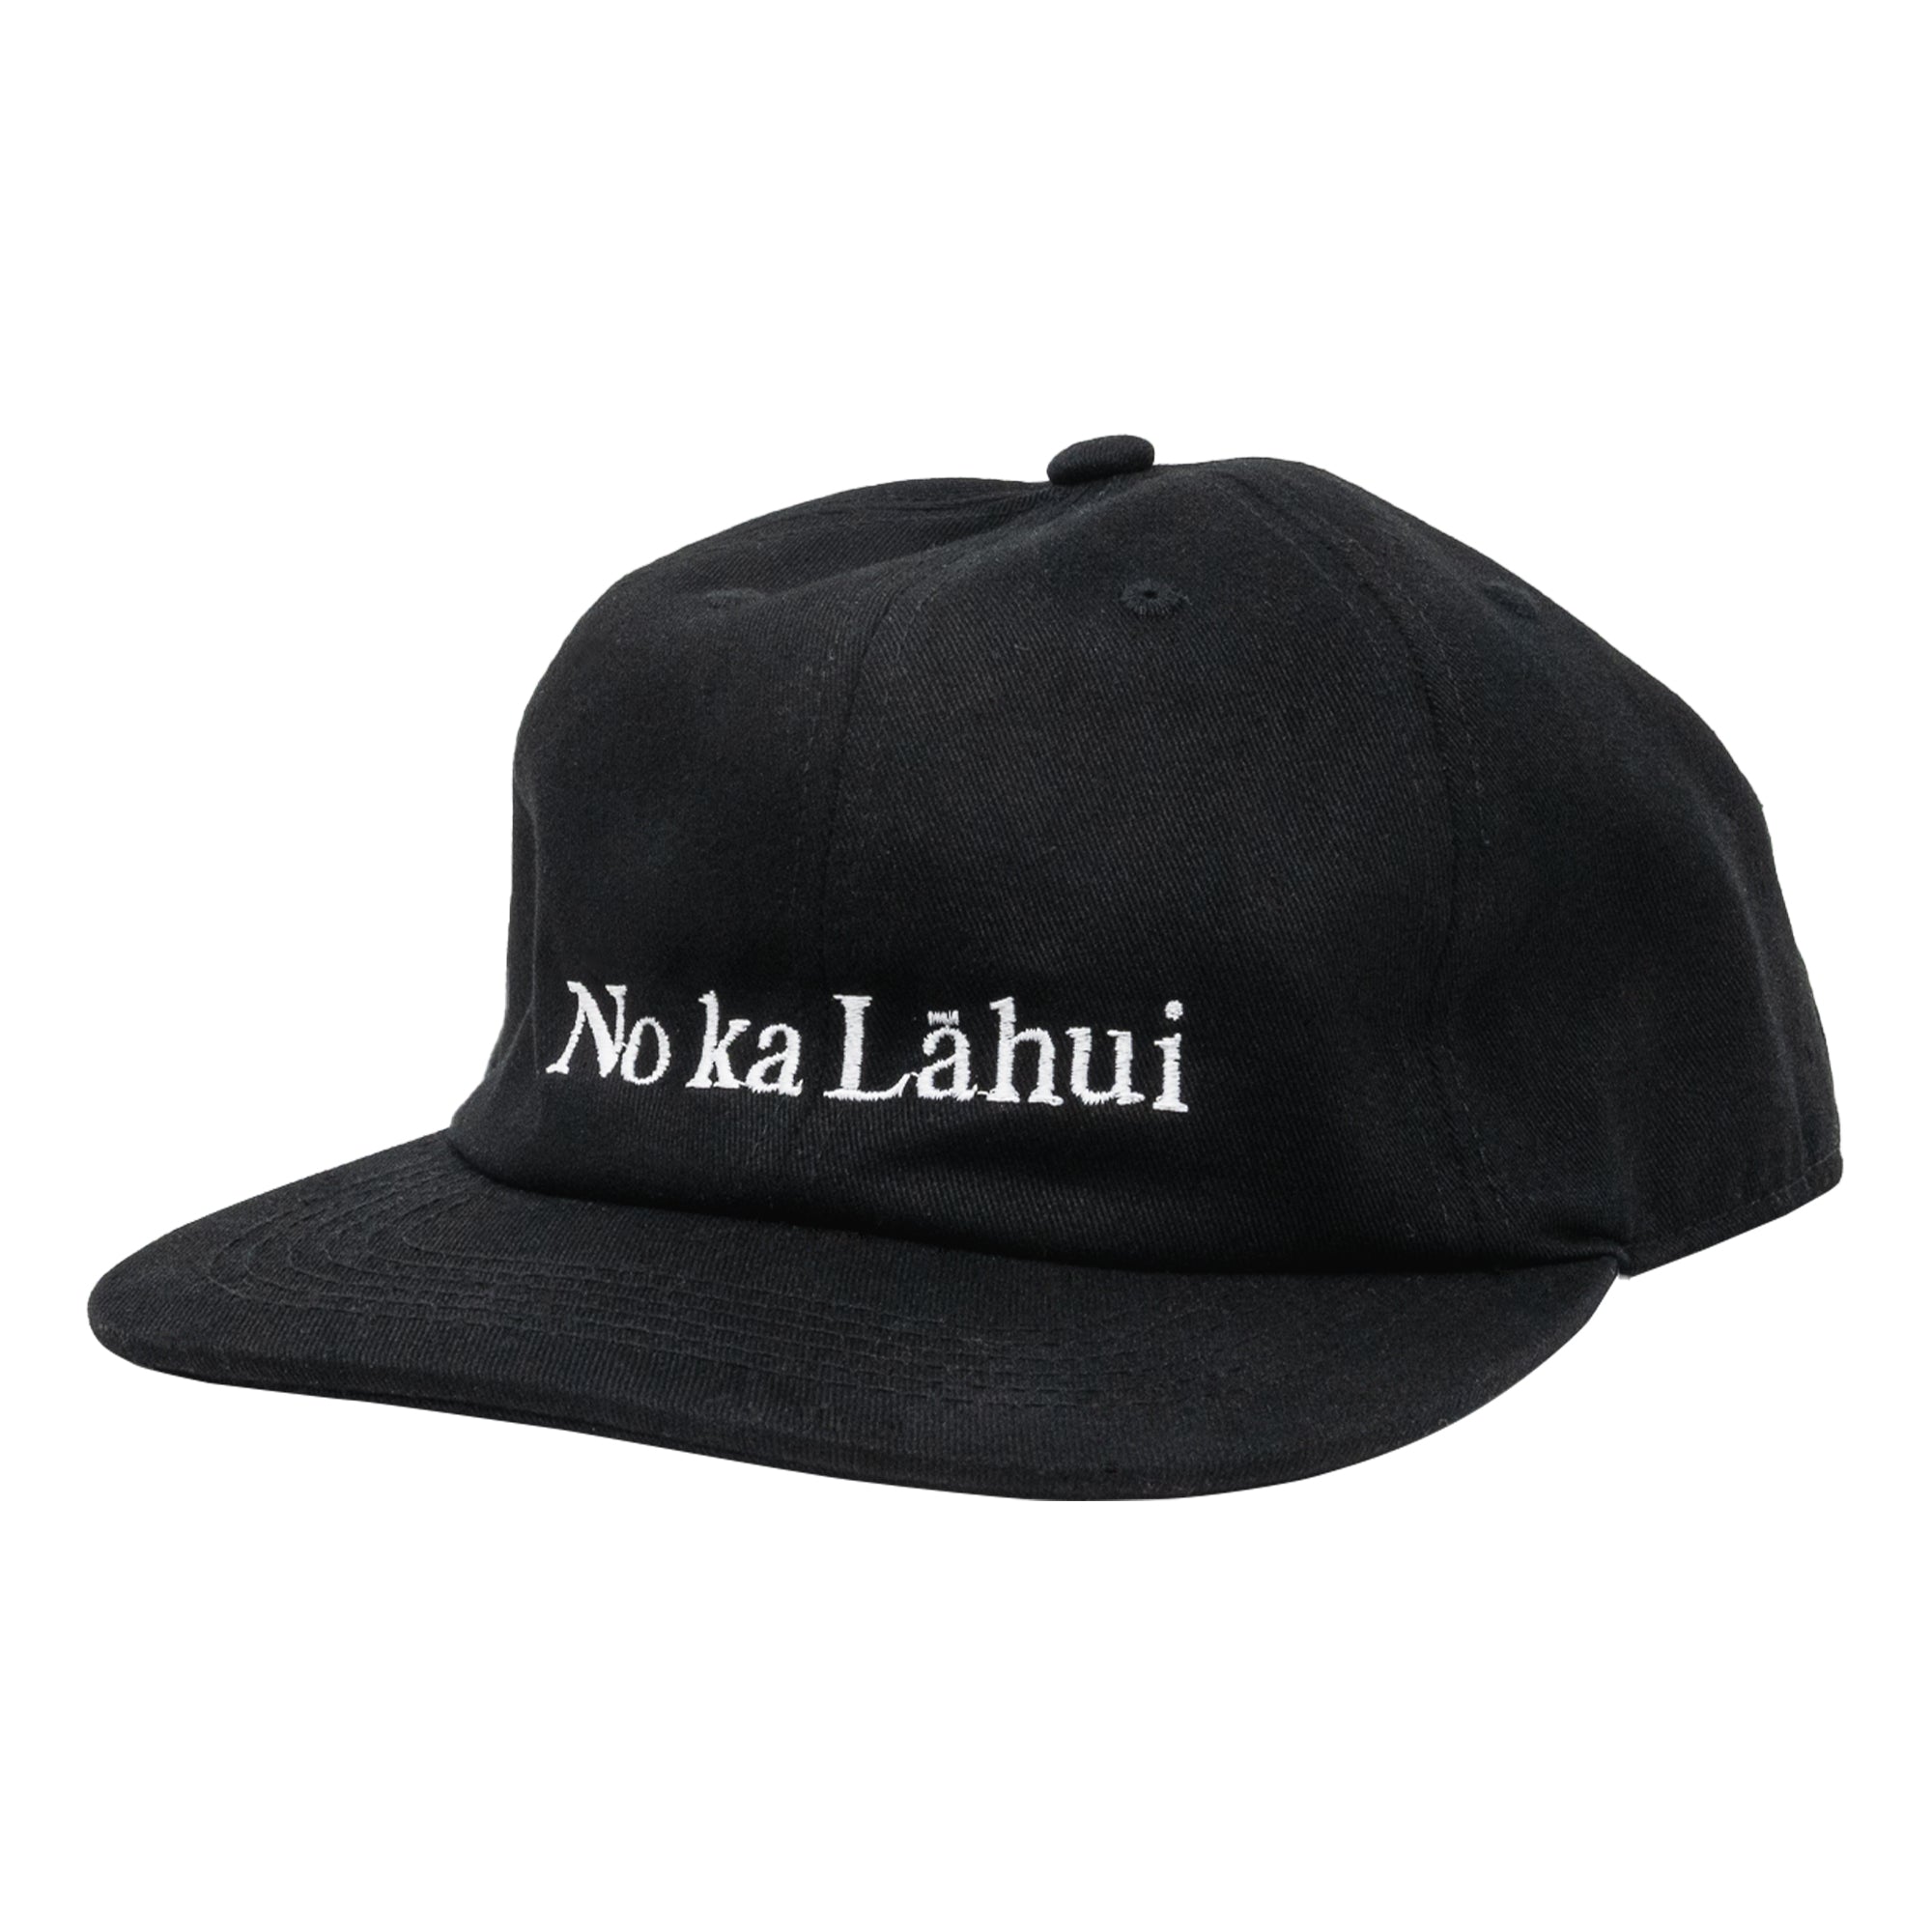 NO KA LAHUI Snapback Hat - Black